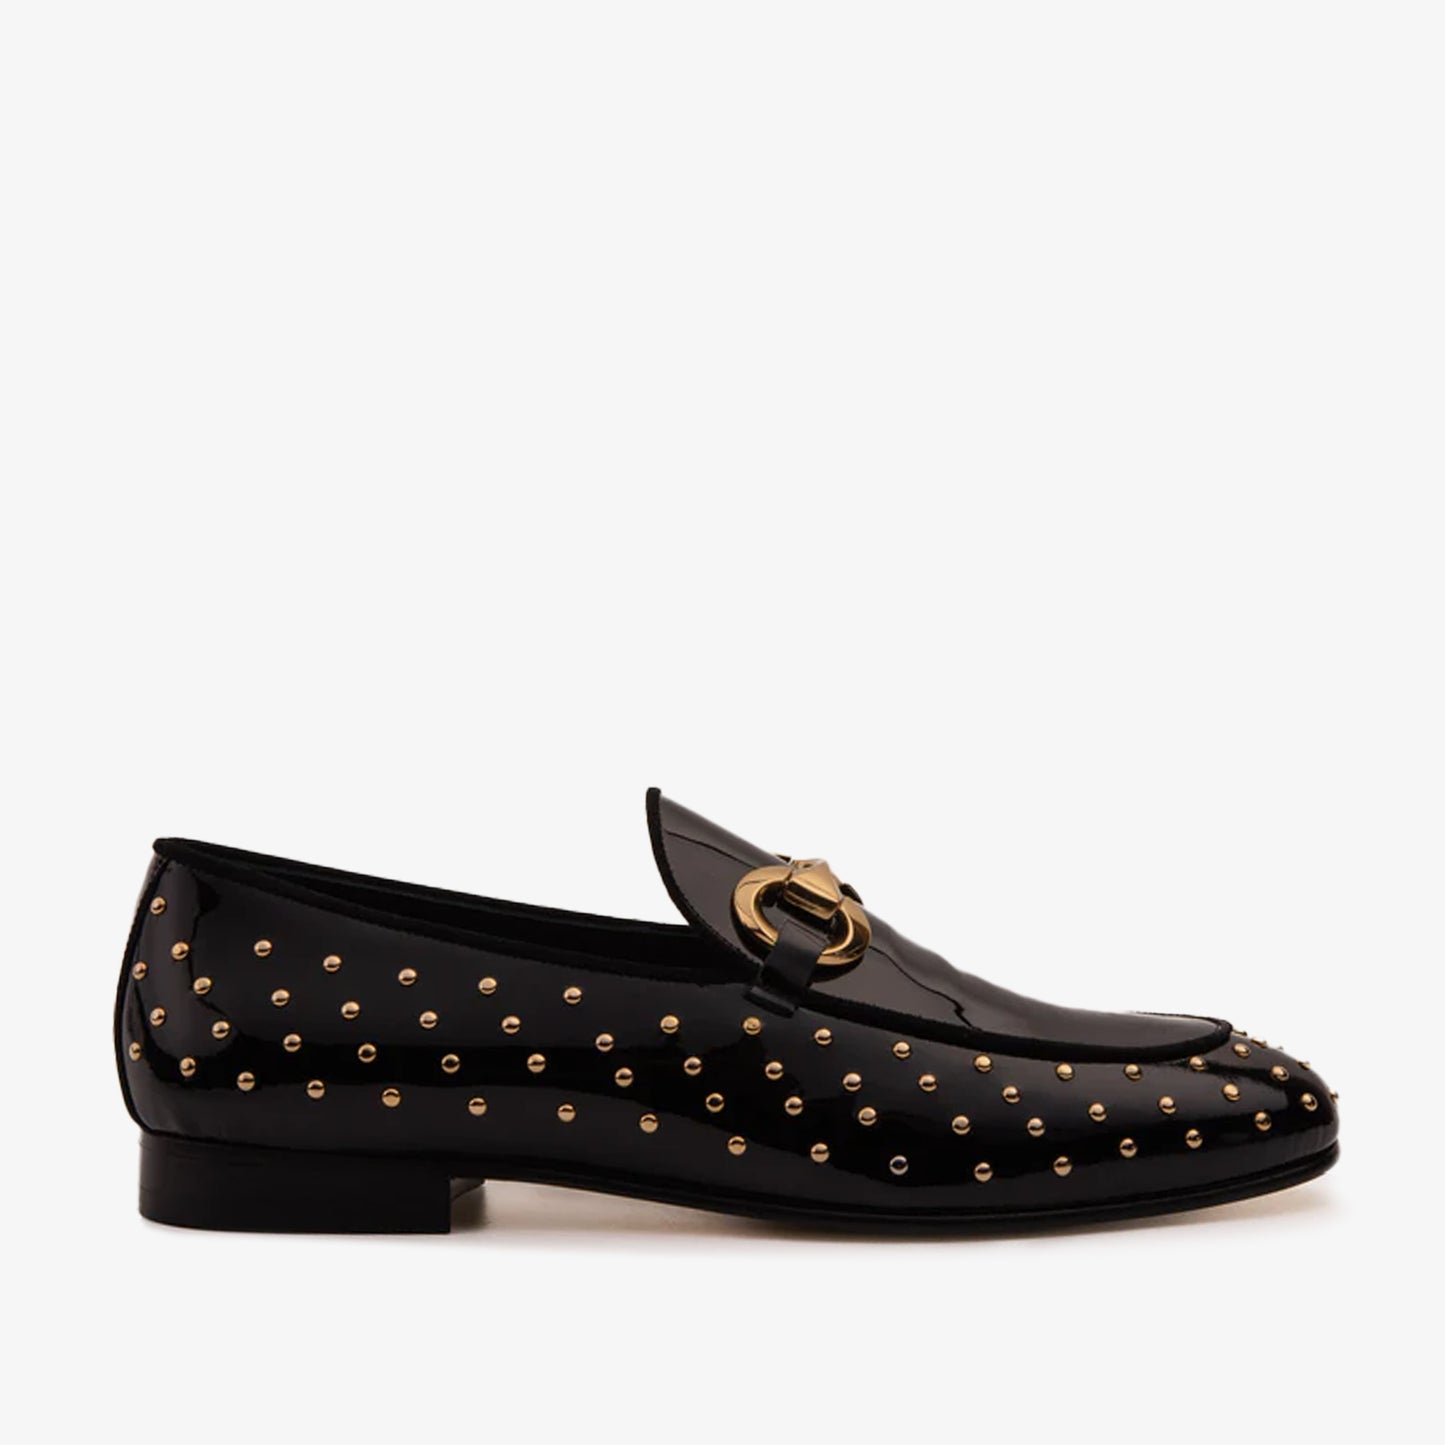 The Jupiter Shoe Black Spike Leather Bit Dress Loafer Limited Edition ...